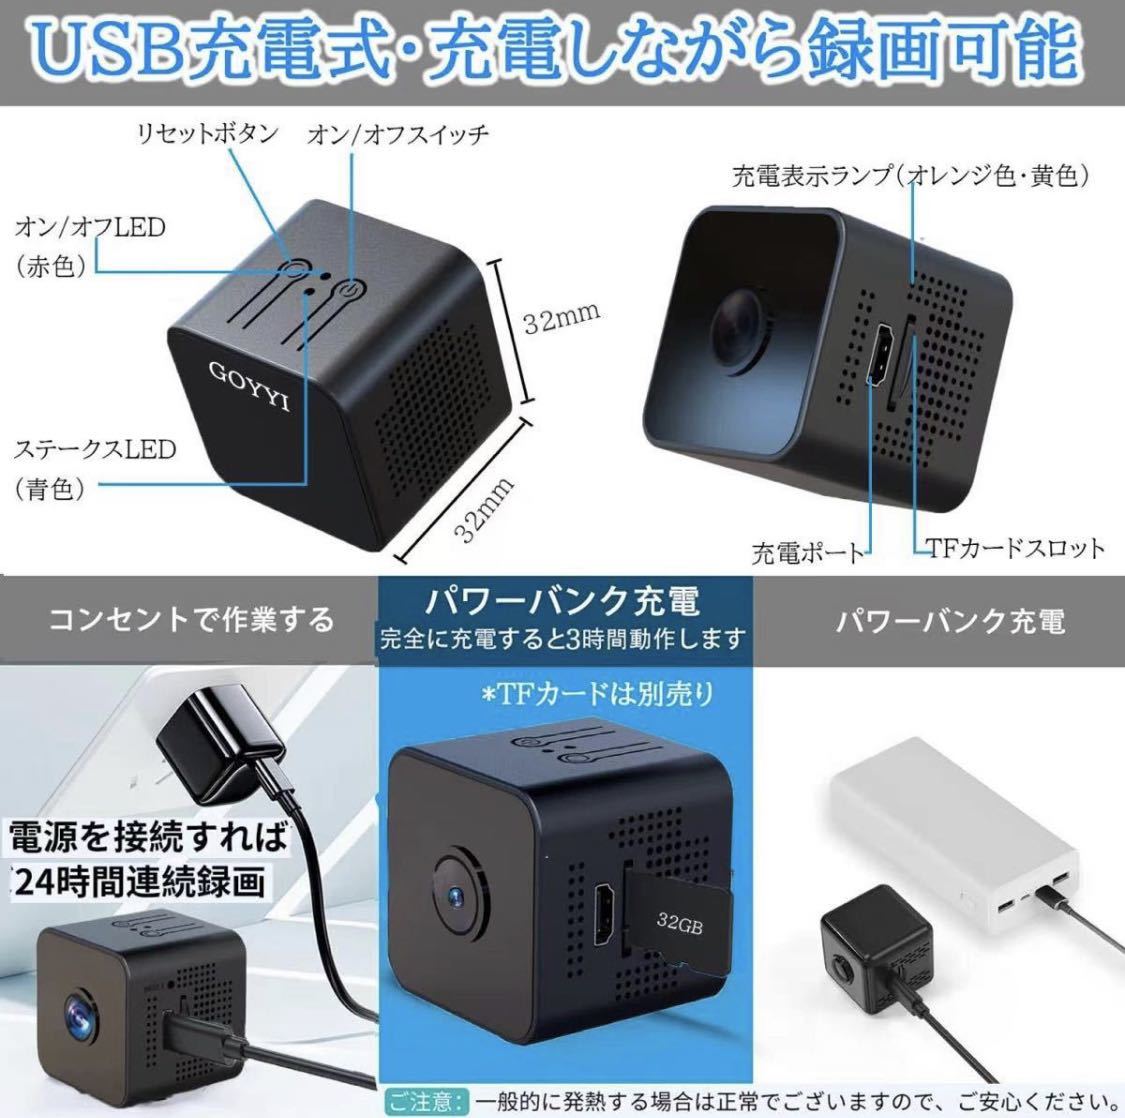  маленький размер камера камера системы безопасности WIFI c функцией запись видеозапись .. мониторинг перемещение body обнаружение широкоугольный салон камера системы безопасности мониторинг камера IOS/Android соответствует японский язык есть руководство пользователя 